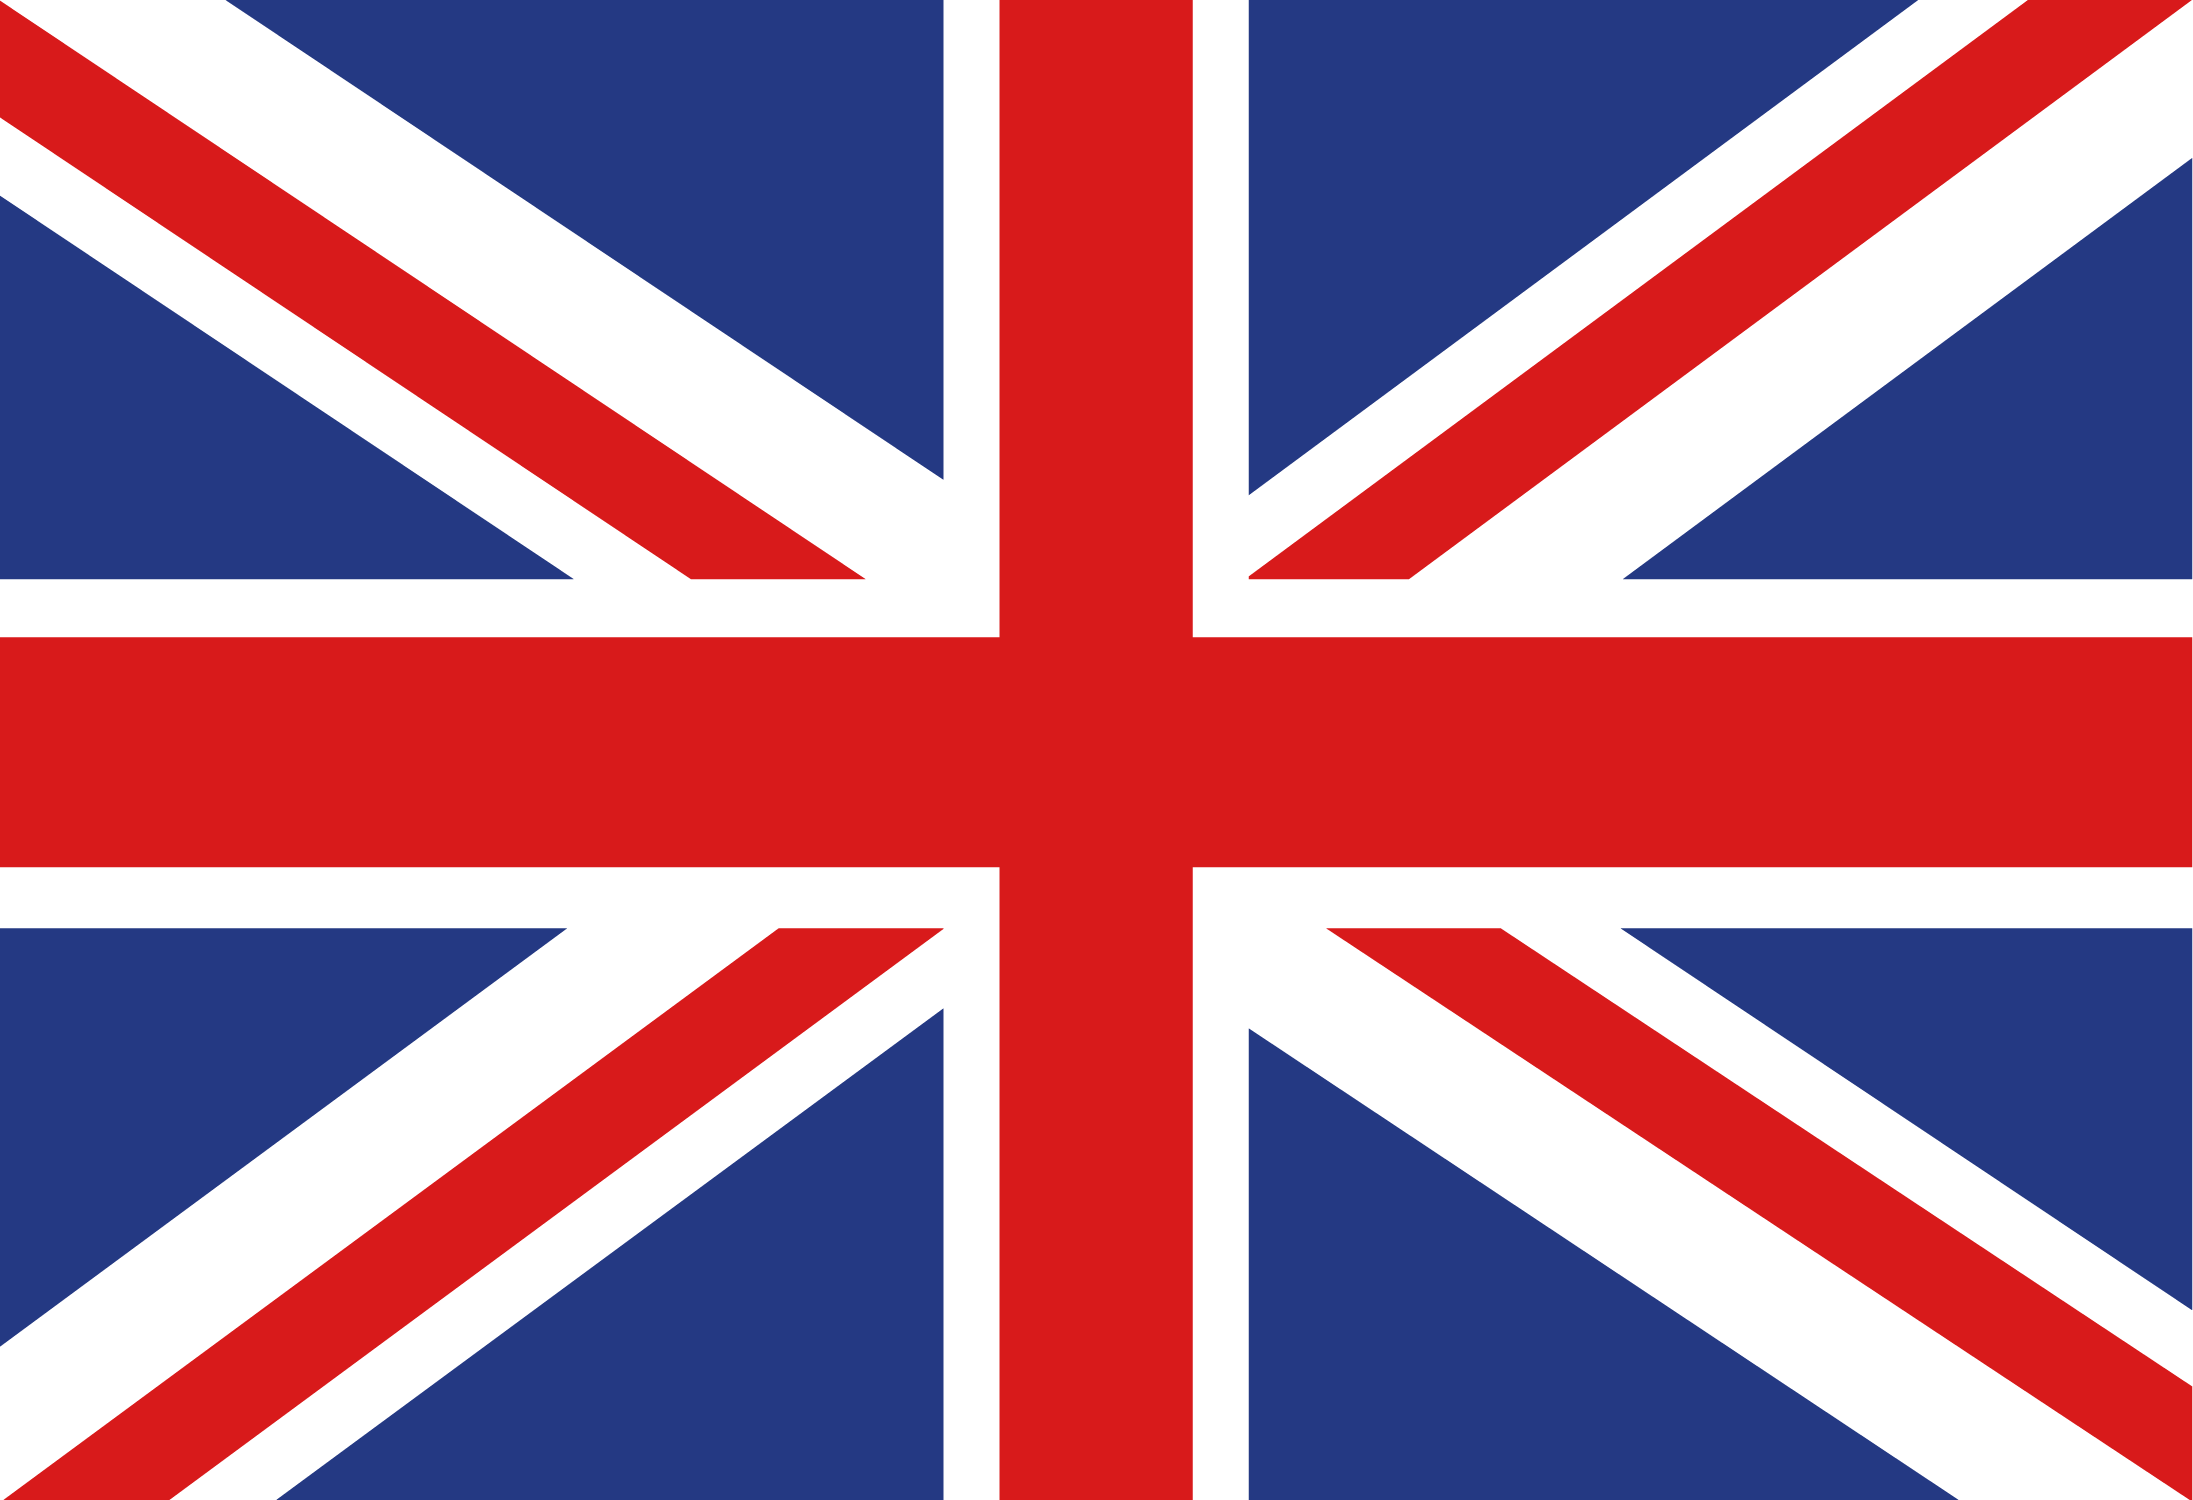 image of UK's flag